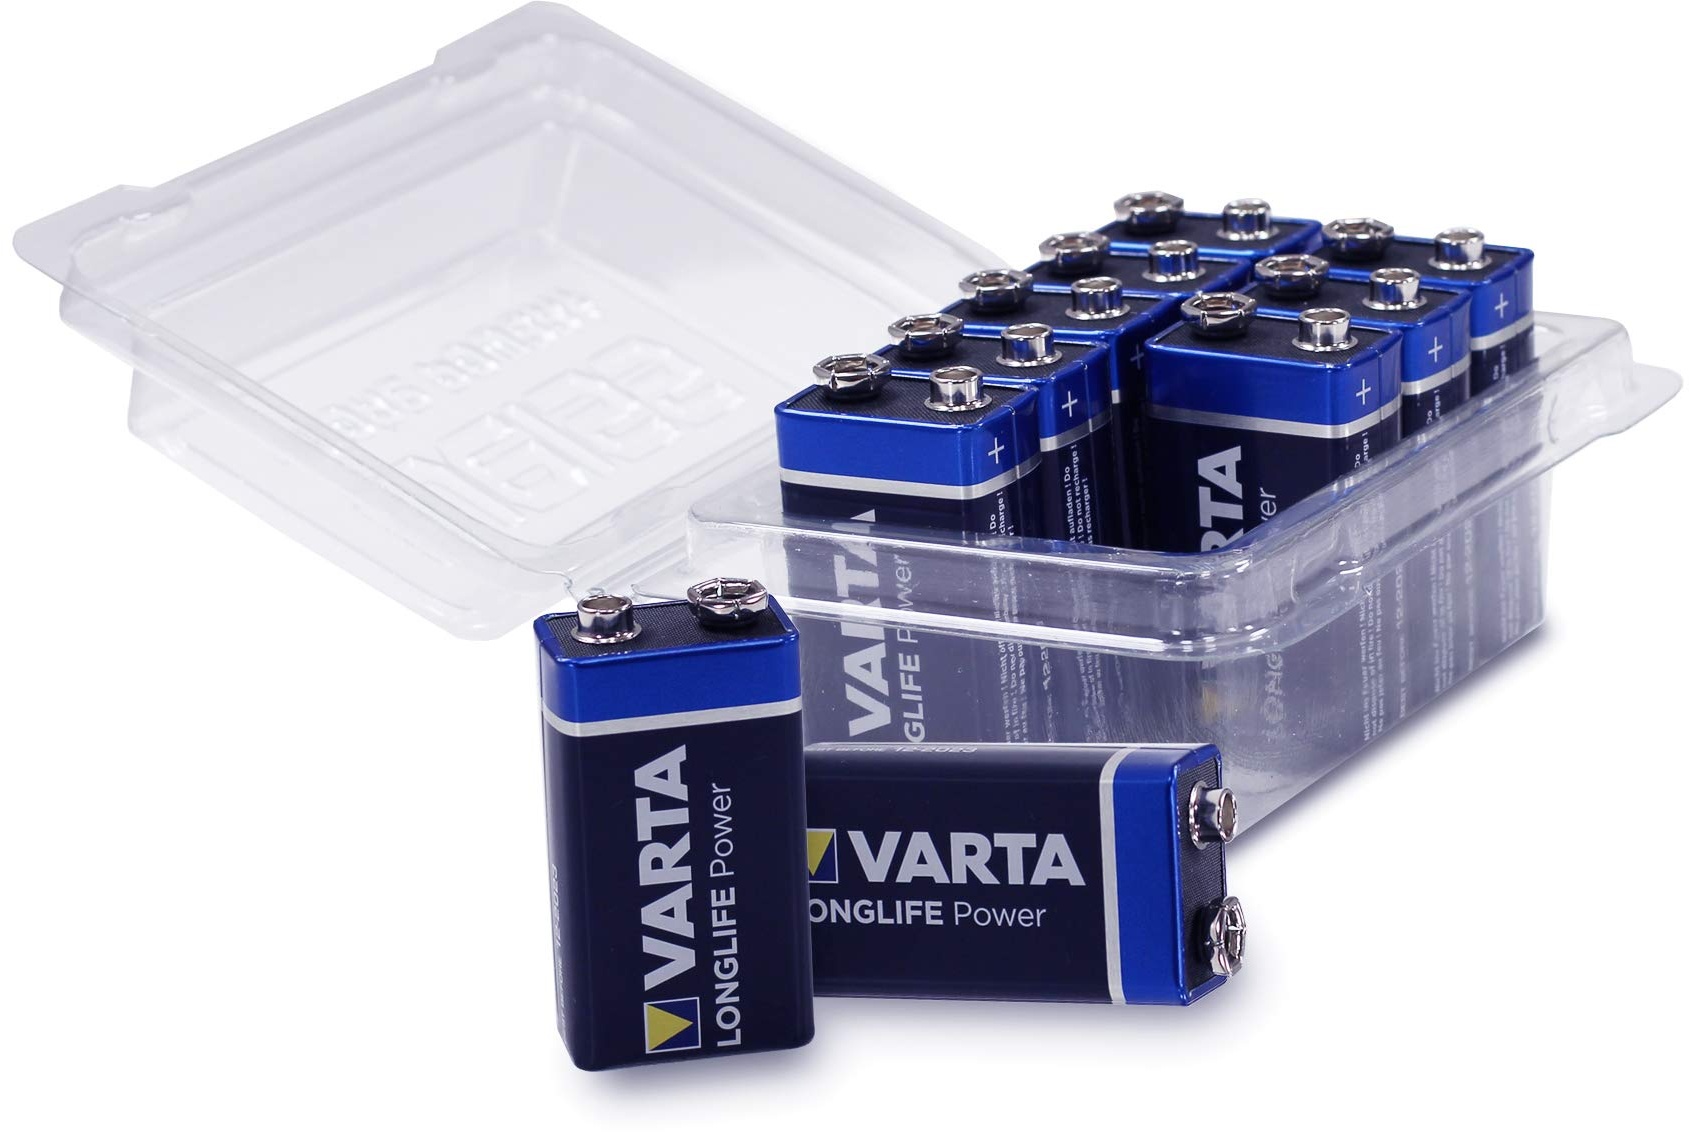 10er-Pack Varta 4922 LONGLIFE Power (vormals High Energy) 9V Block Batterie in Wiederverschließbarer Batteriebox von Weiss - More Power +, 10er Set